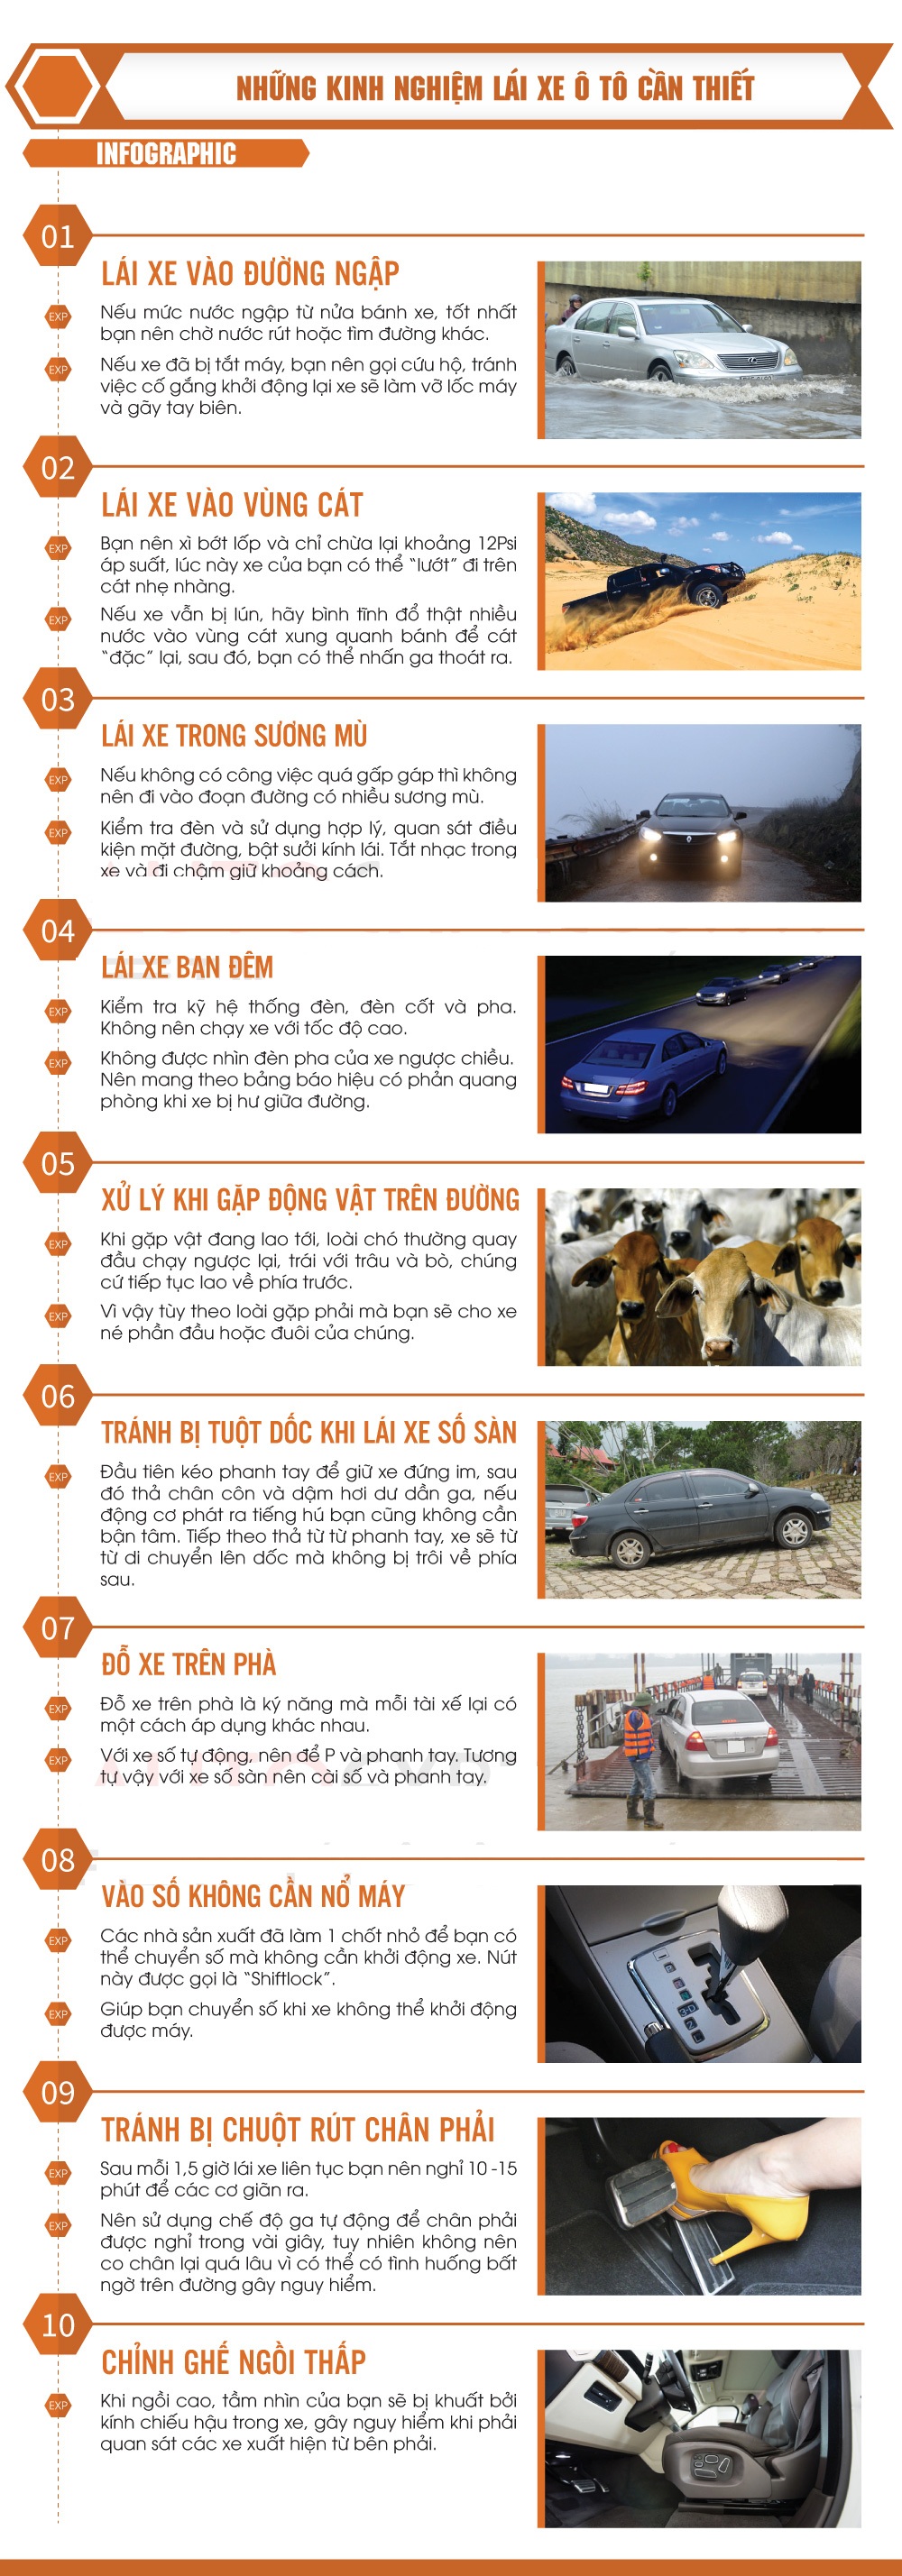 Infographic Hướng dẫn lái xe ô tô an toàn